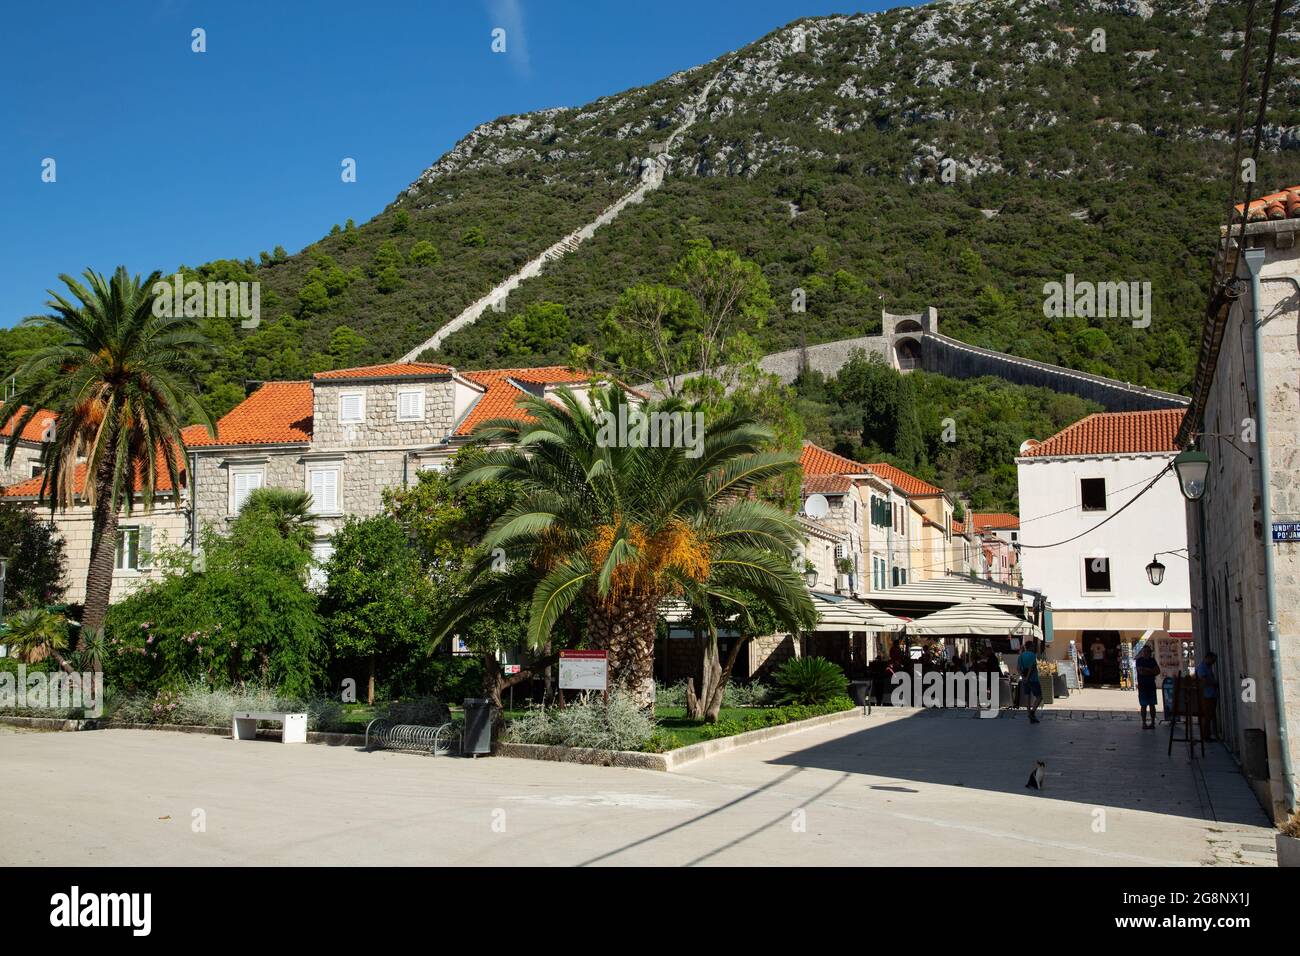 Vistas del pueblo de Stone, pequeño pueblo de Croacia primera linea de defensa contra los Otomanos en la antigüedad con la segunda muralla mas grande Stock Photo